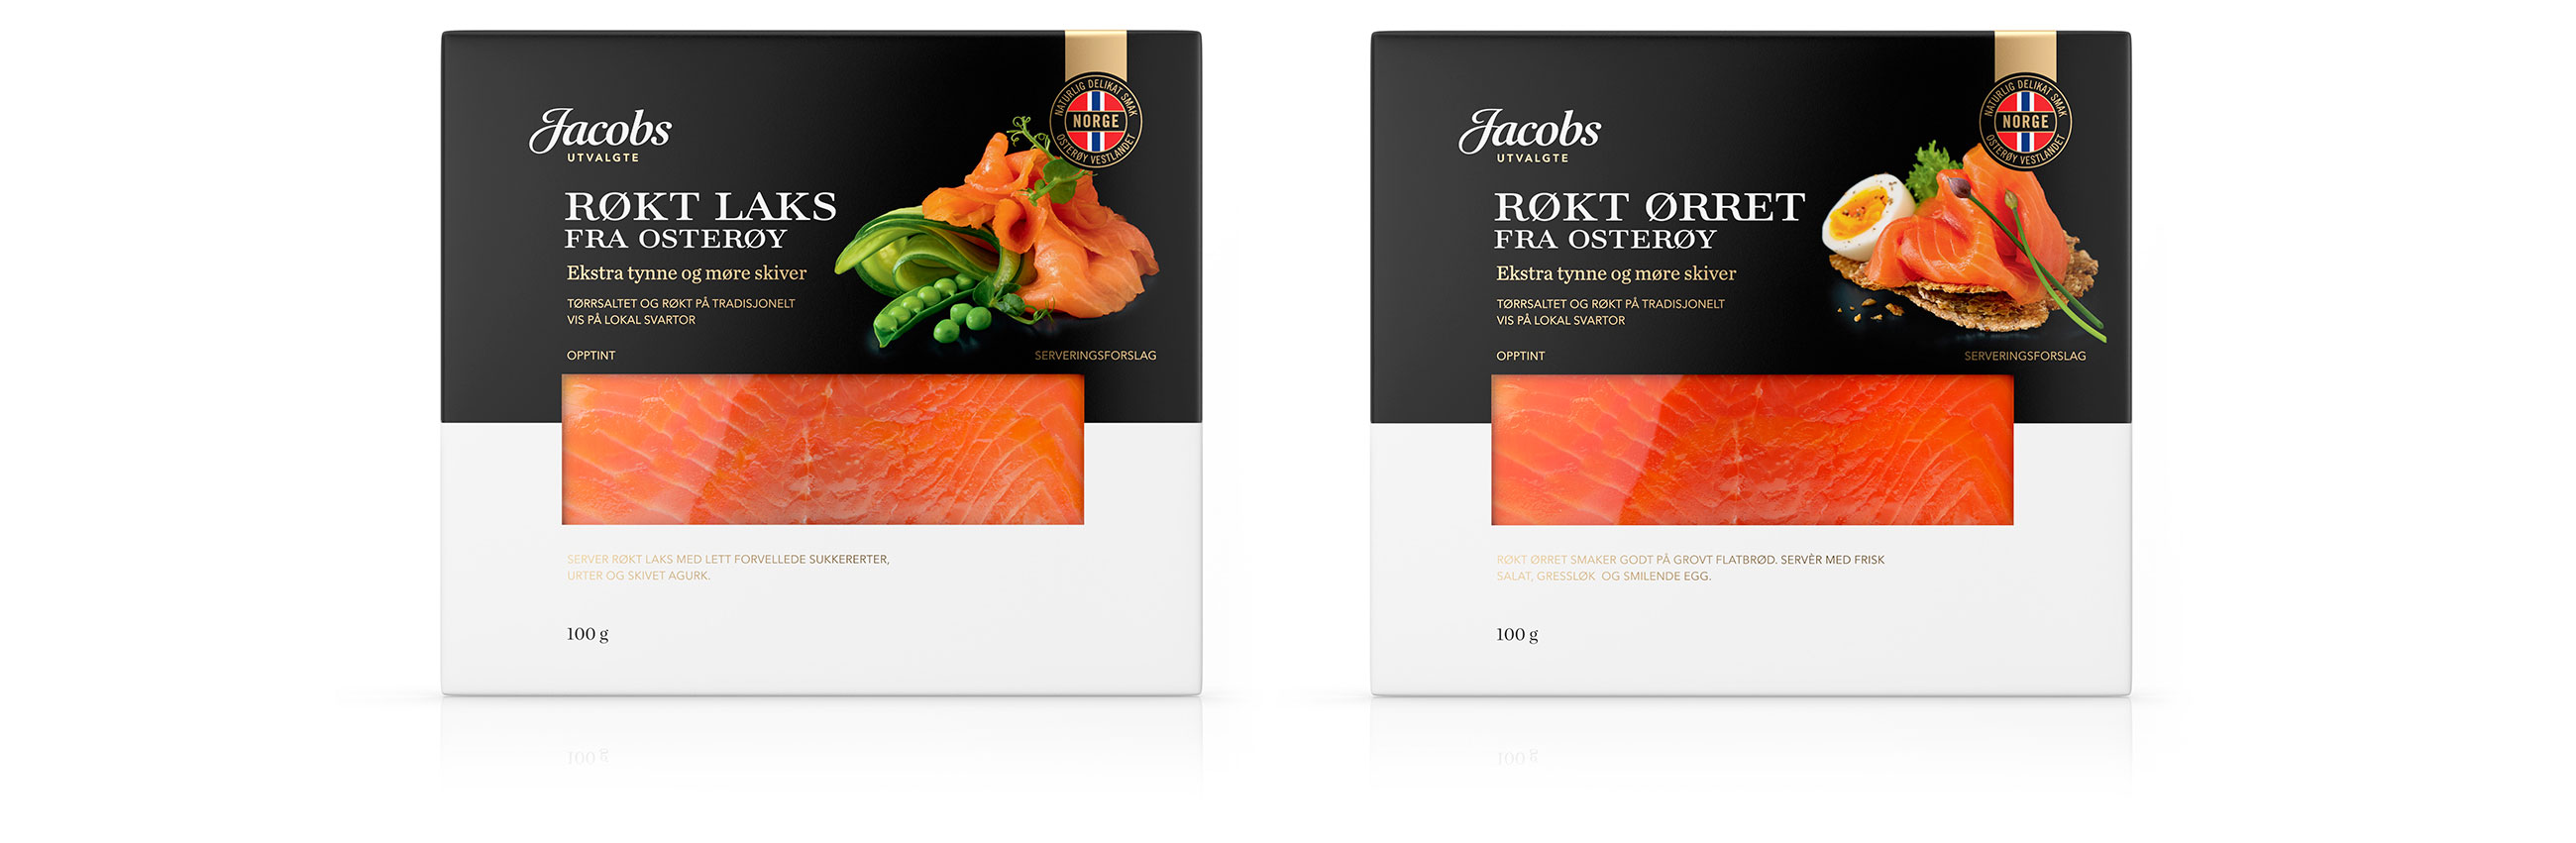 Jacobs Utvalgte Røkt Laks og Røkt Ørret pakningsdesign. Emballasje packaging design.